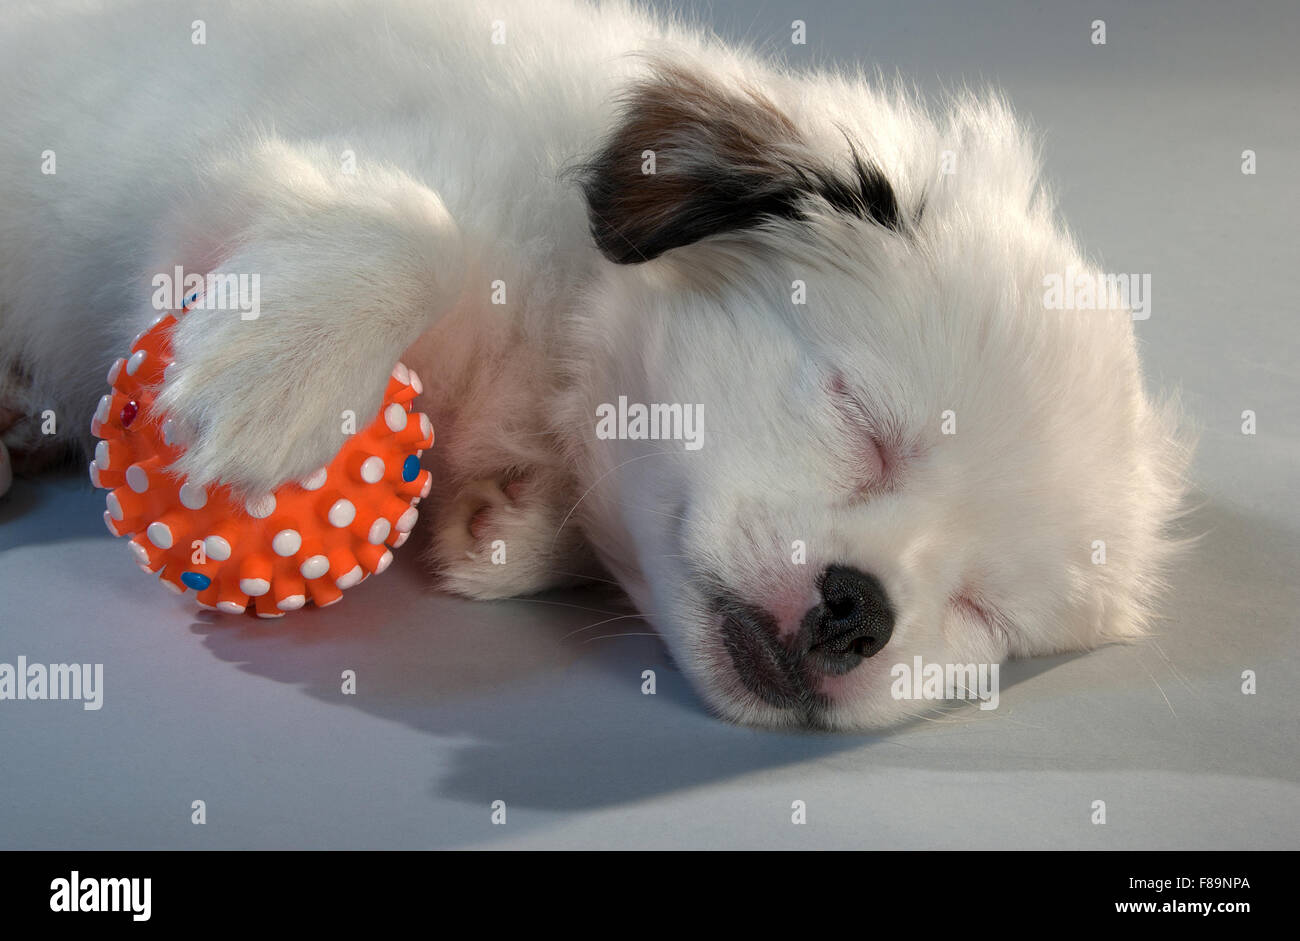 Ritratto del cucciolo a pelo del compagno si mescola con una sfera arancione. sfondo grigio, formato orizzontale. Foto Stock